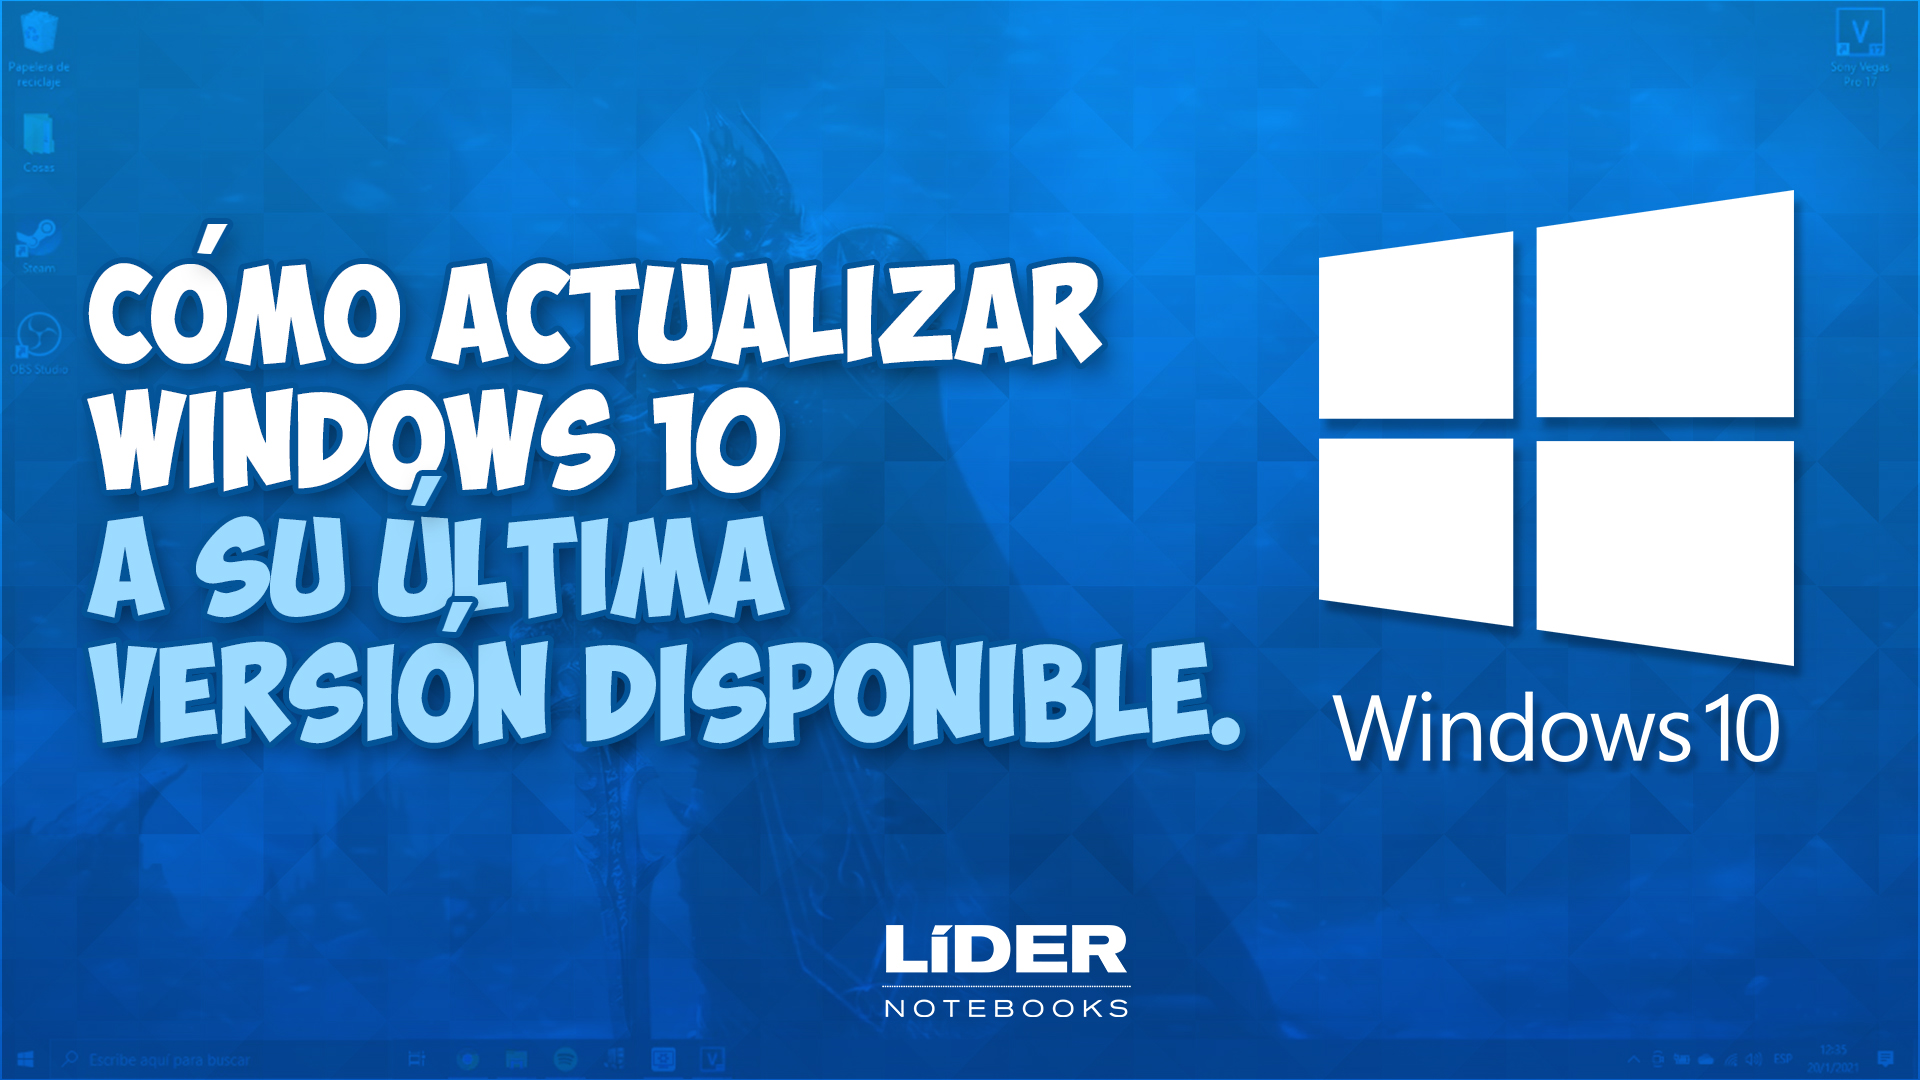 Cómo Actualizar Windows 10 A La última Versión Posible Lider Notebooks 5915